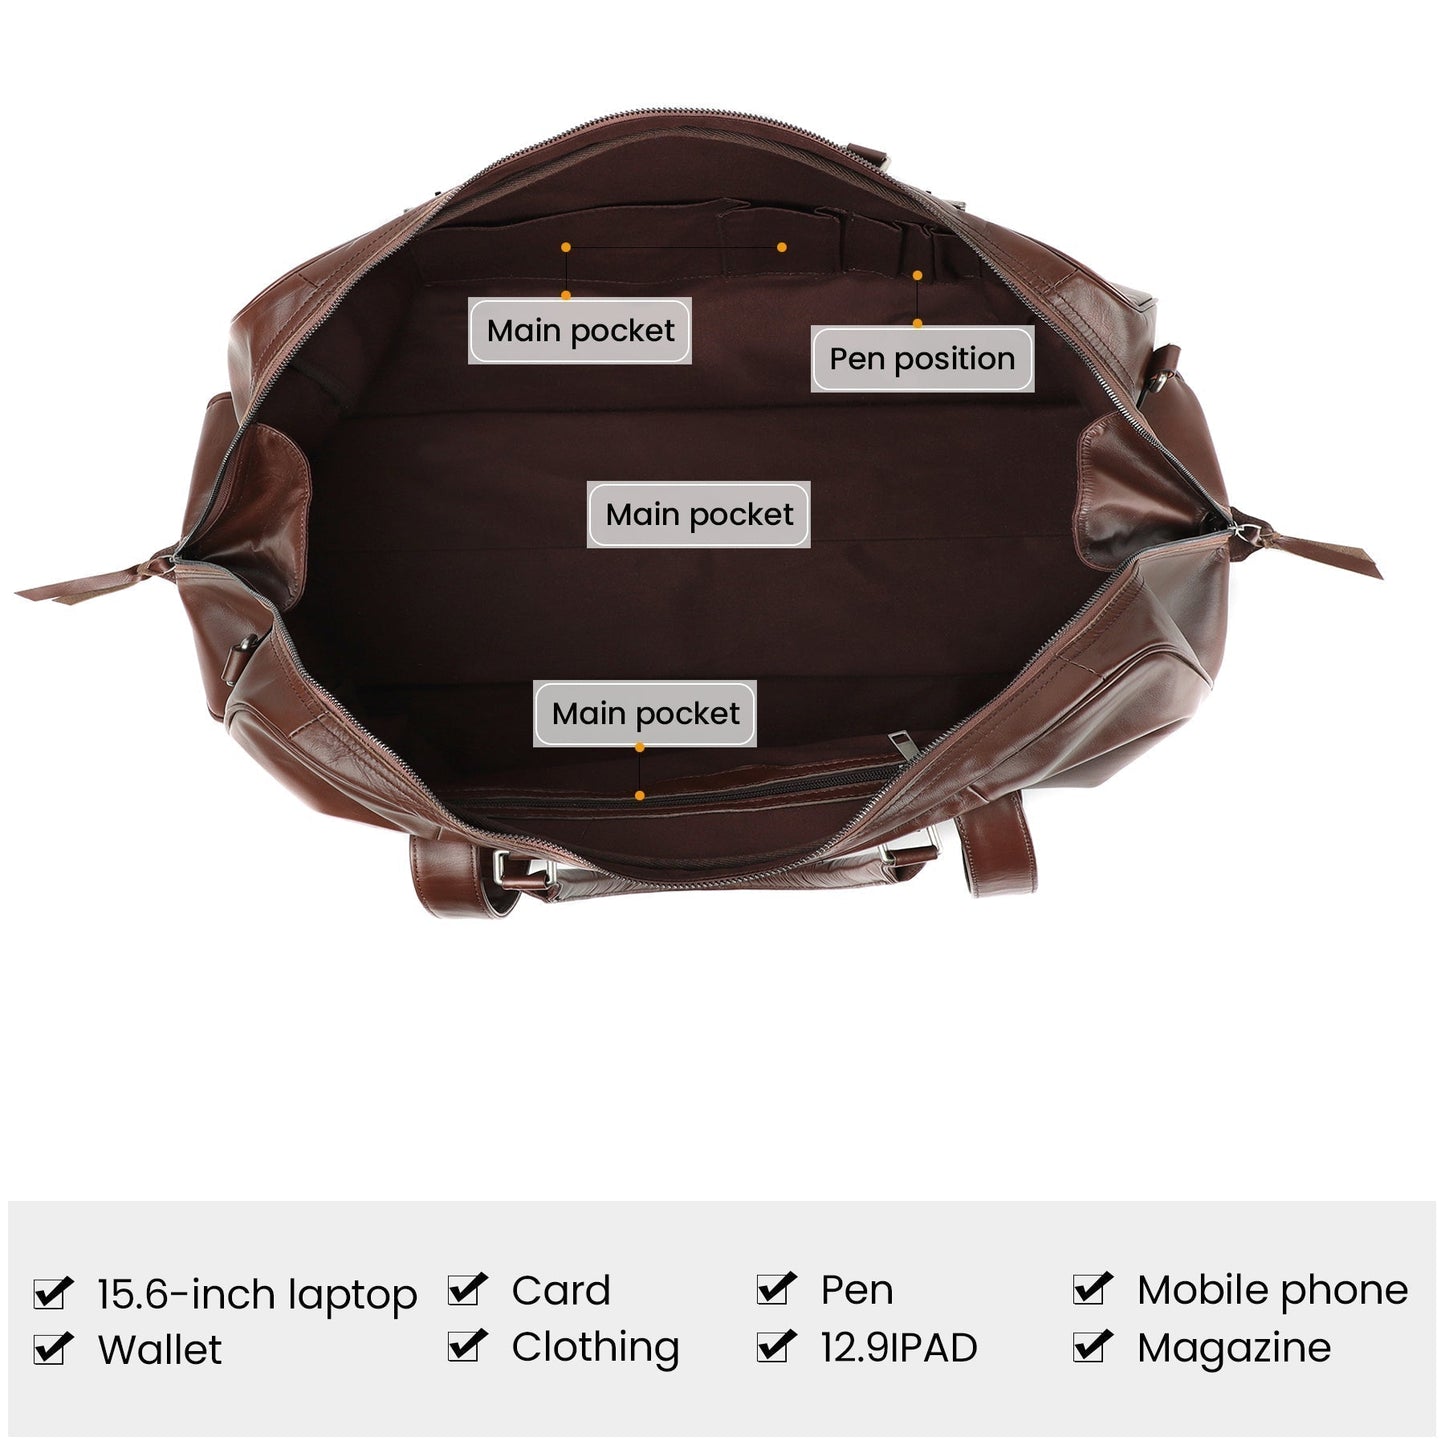 Stylish Leather Overnight Travel Bag for Men Woyaza